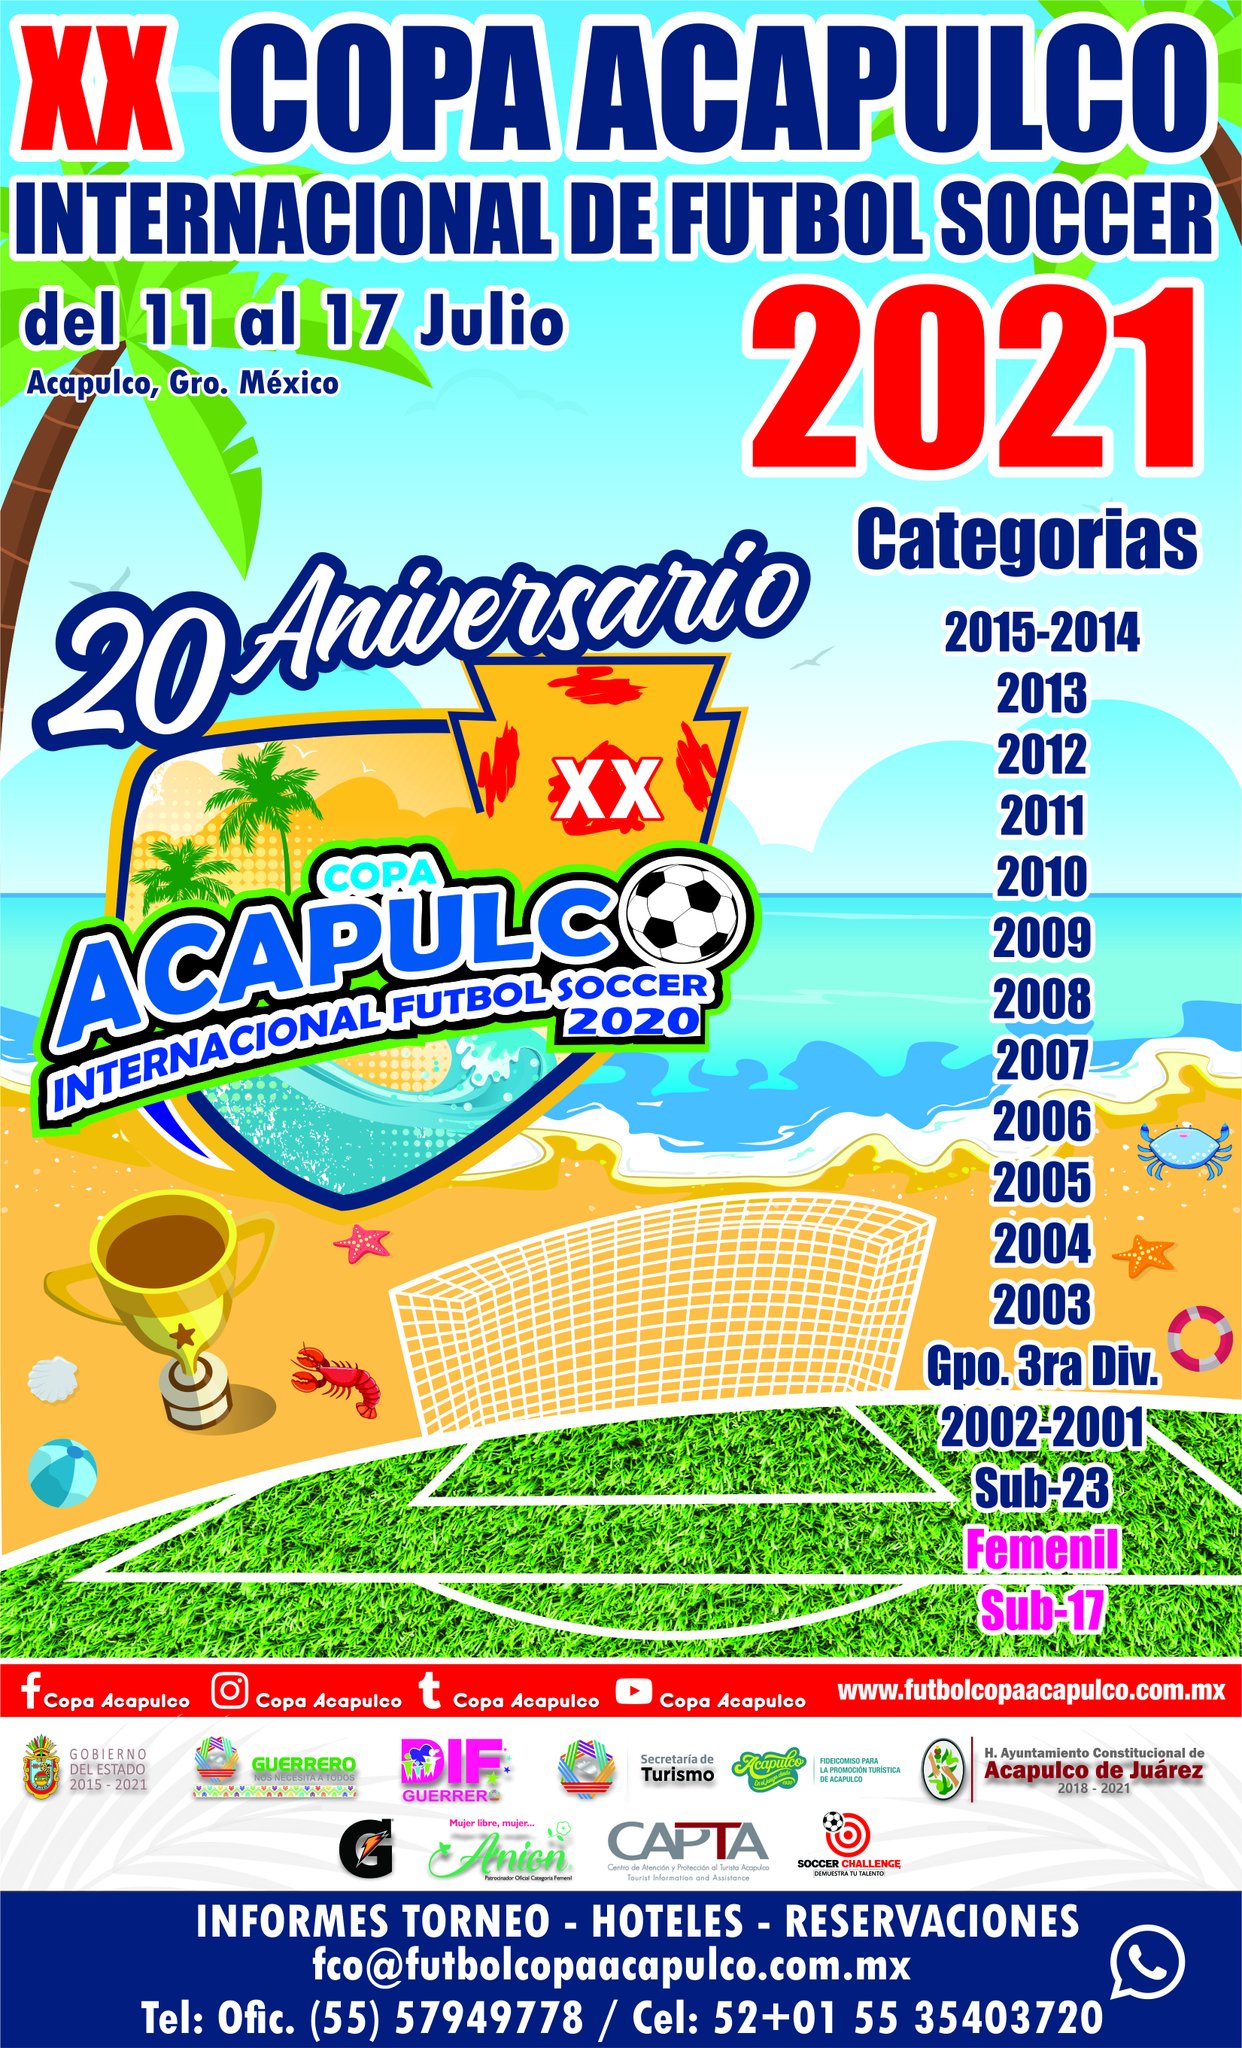 ¿Cuándo es la Copa Acapulco 2022